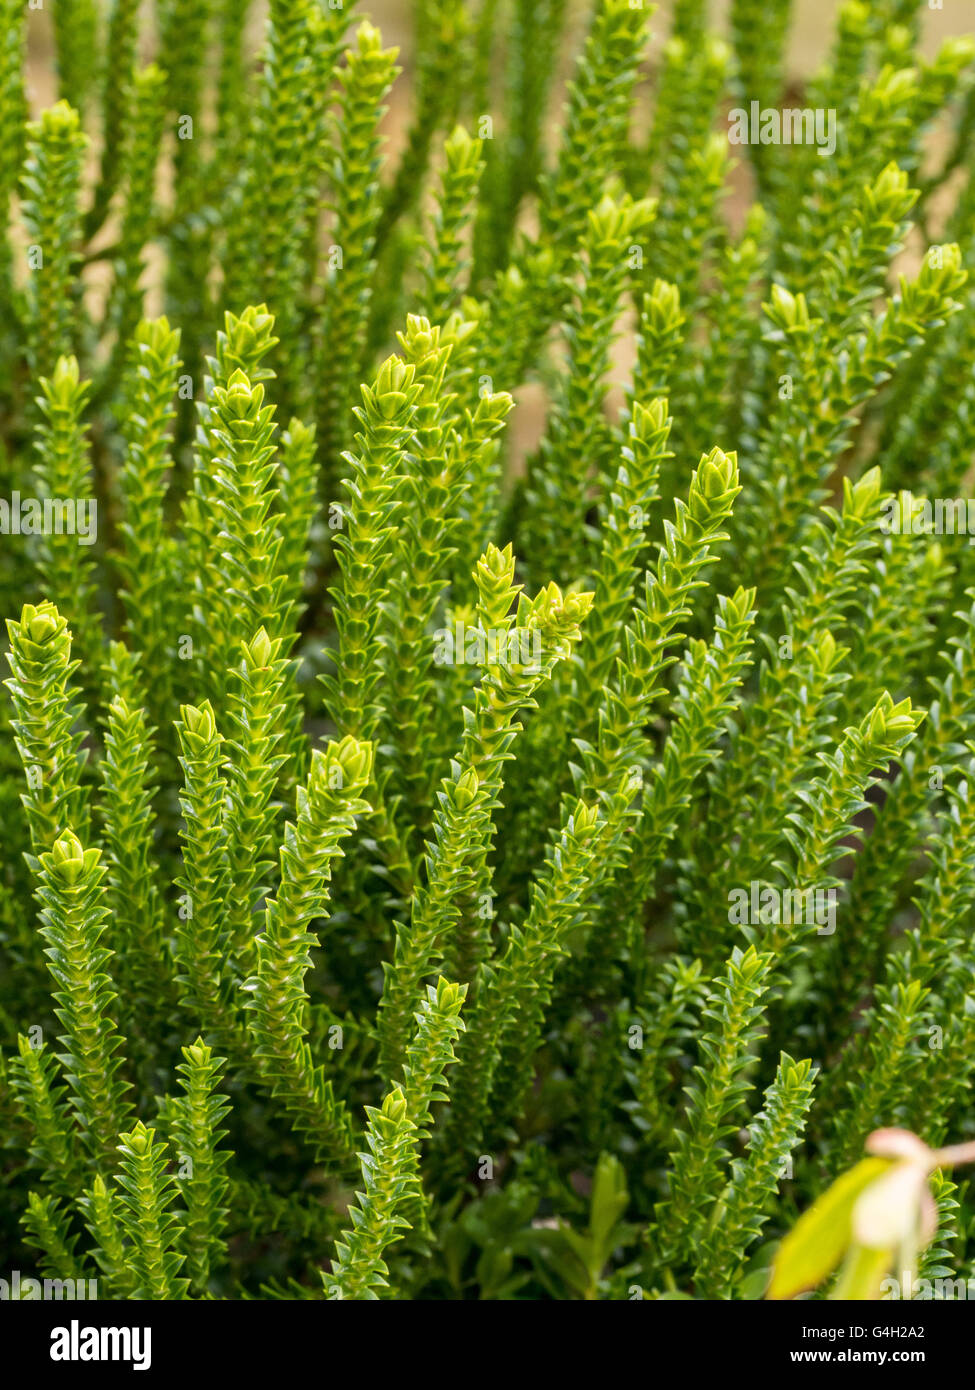 Hebe 'Edinensis' foliage Stock Photo